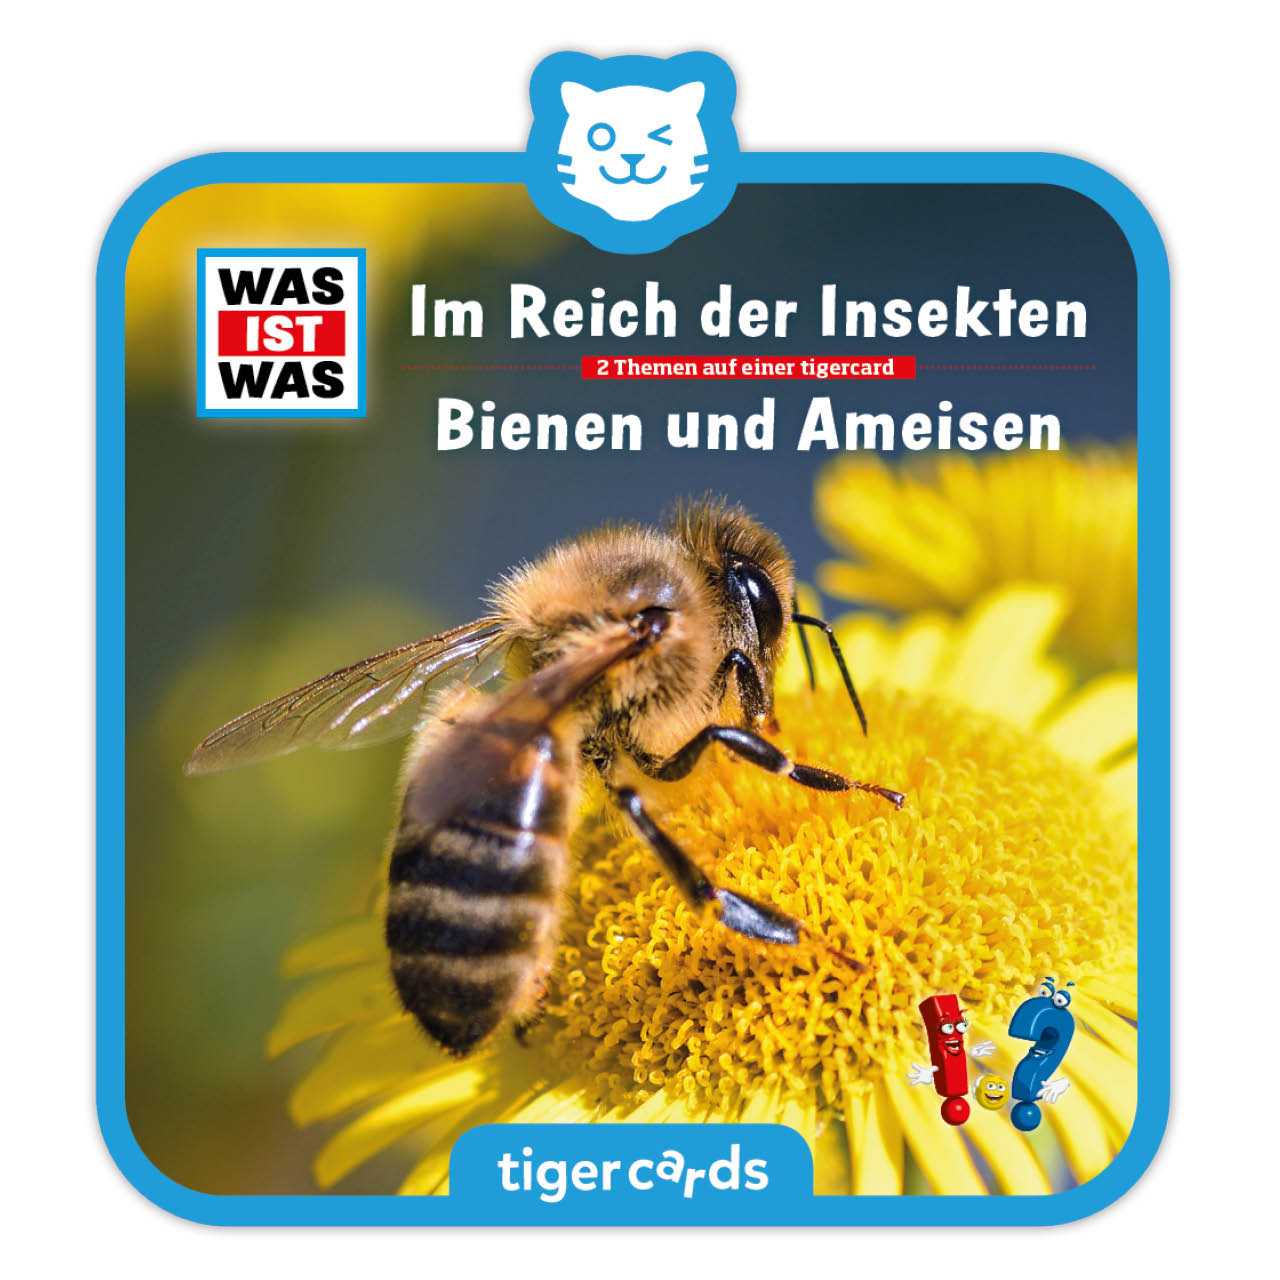 WAS IST WAS - Im Reich der Insekten als Tigercard